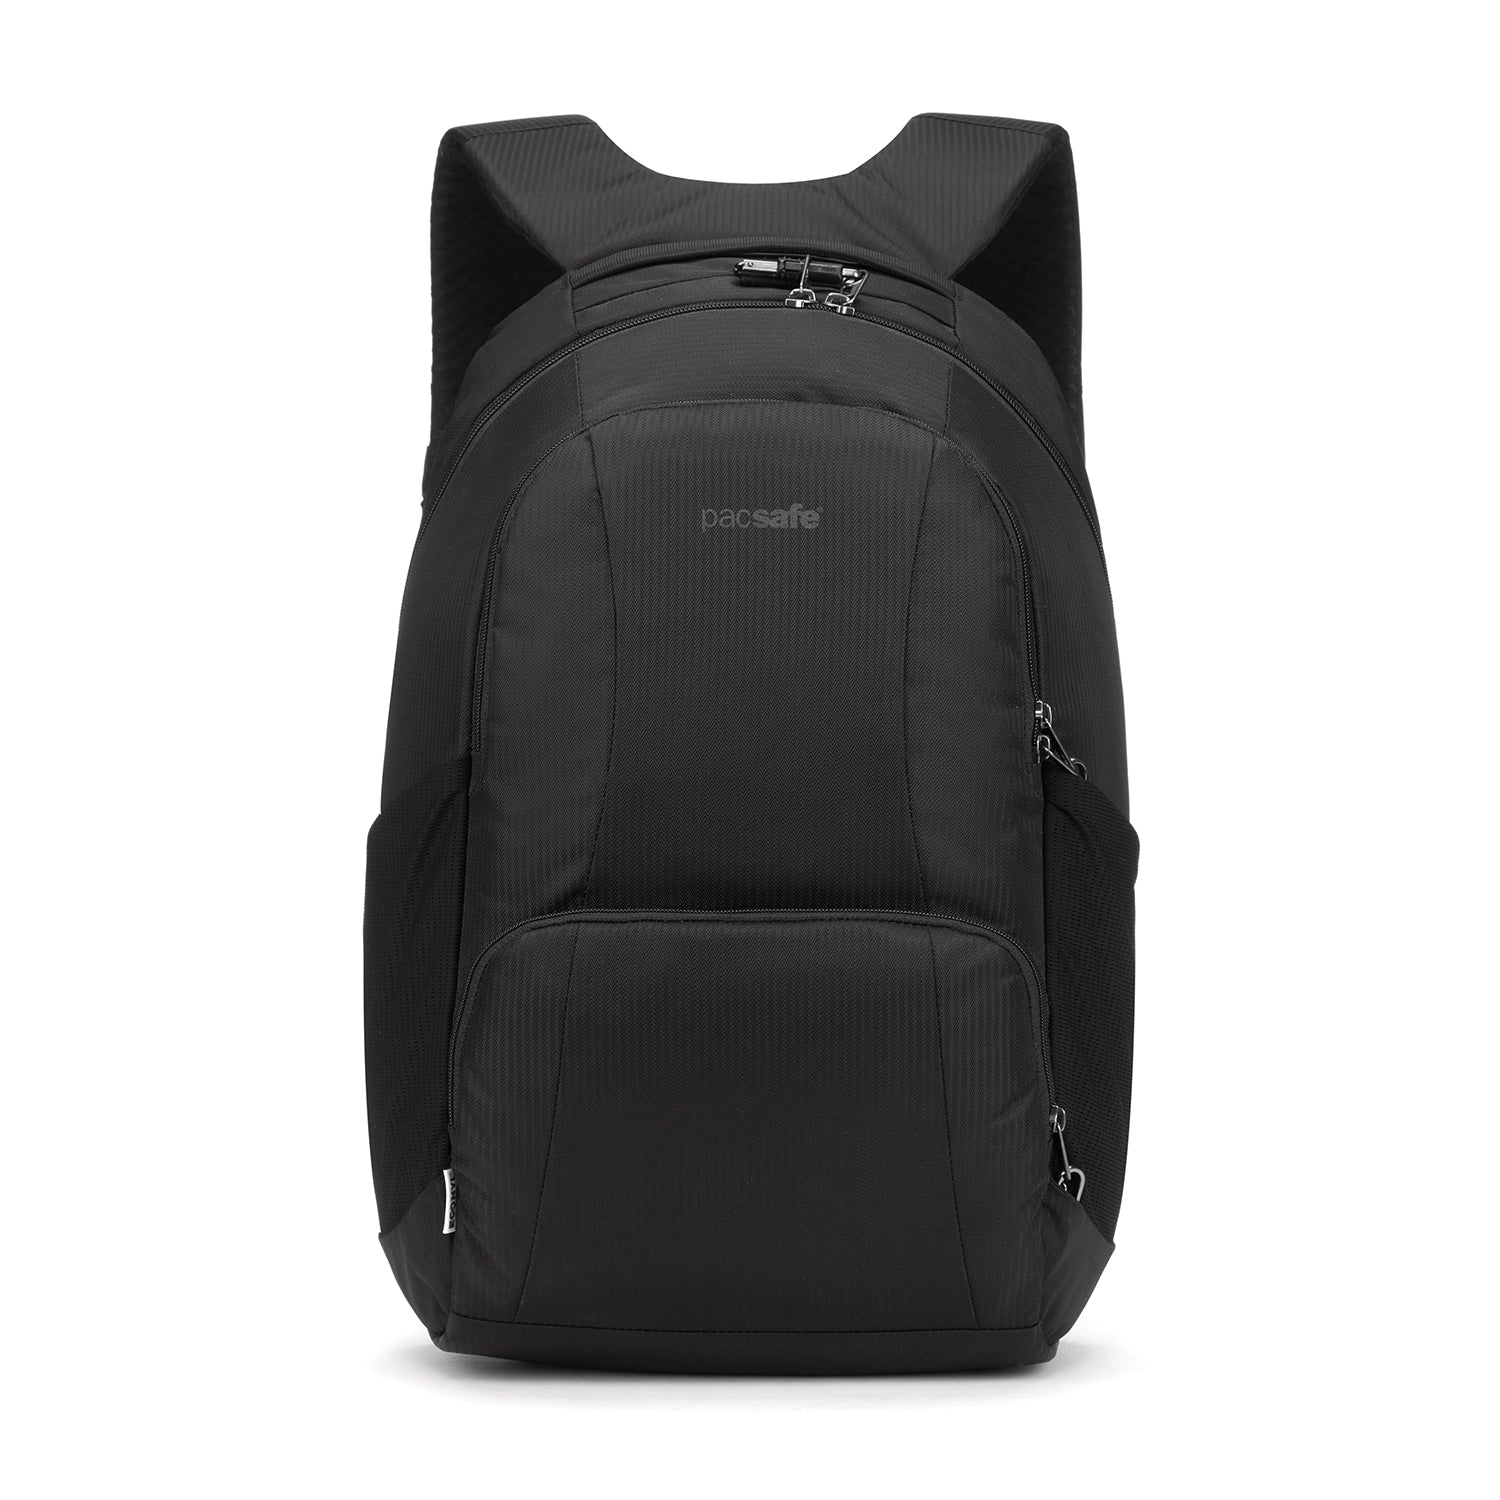 Pacsafe - LS450 Backpack - Black-1